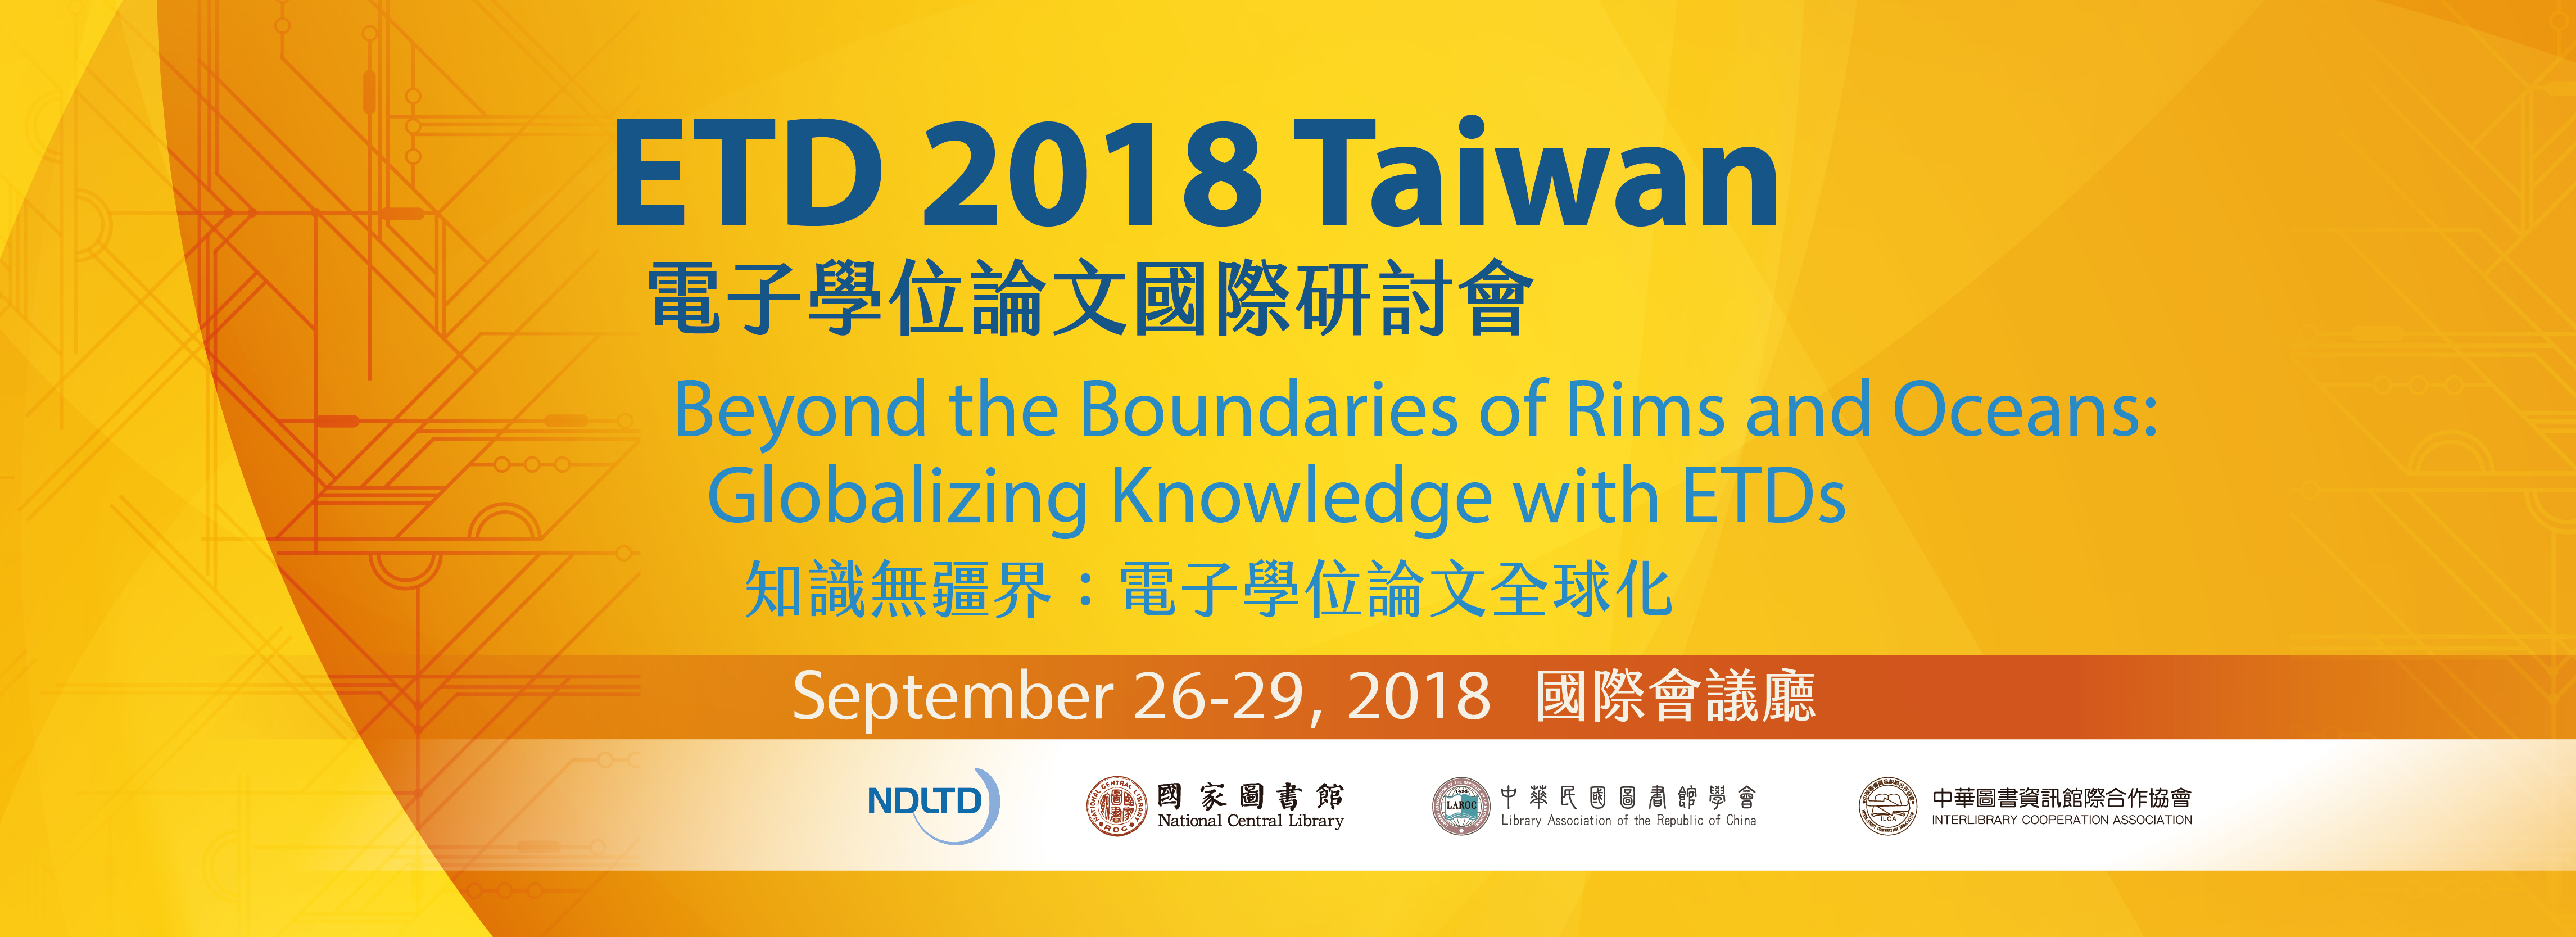 第21屆電子學位論文國際學術研討會(ETD 2018 Taiwan)首頁大圖